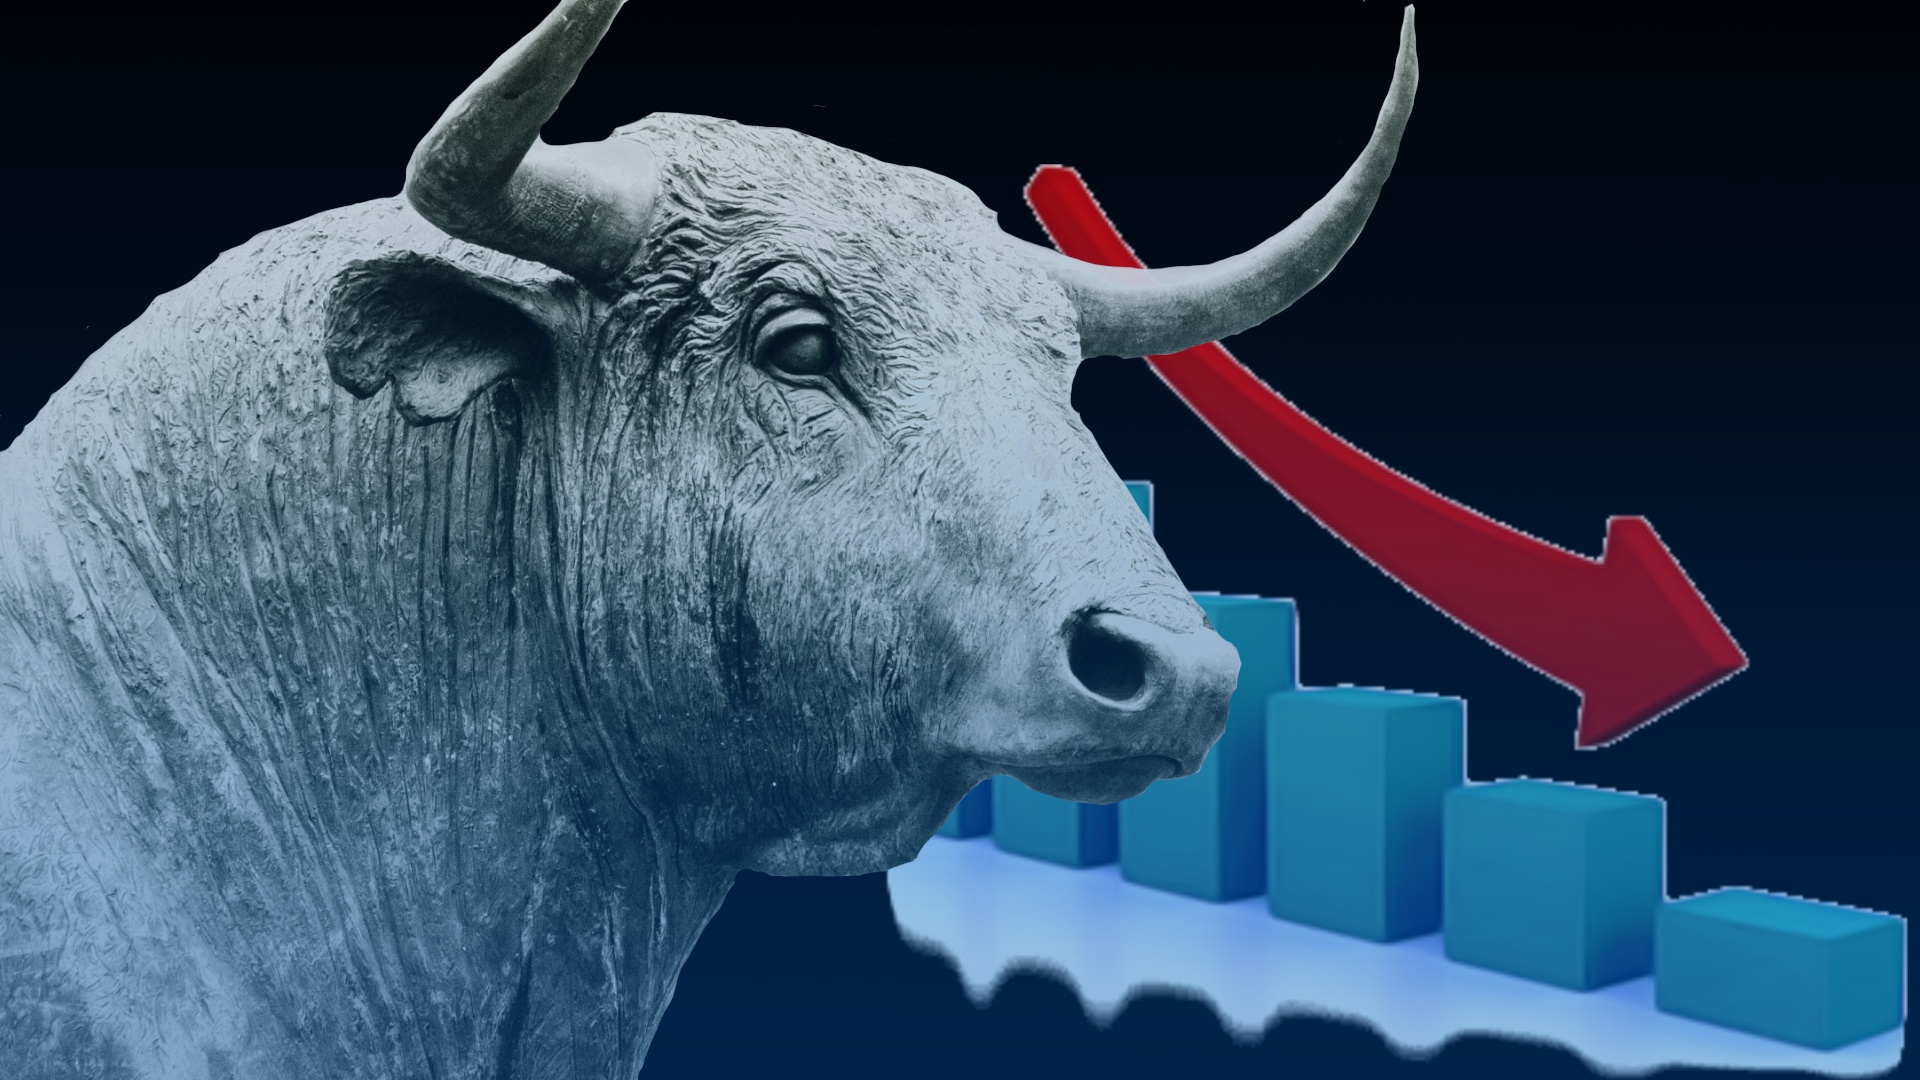 #Bekannter Gaming-Clan zu schlecht für die Wall Street: Aktie stürzt ab, Rauswurf droht